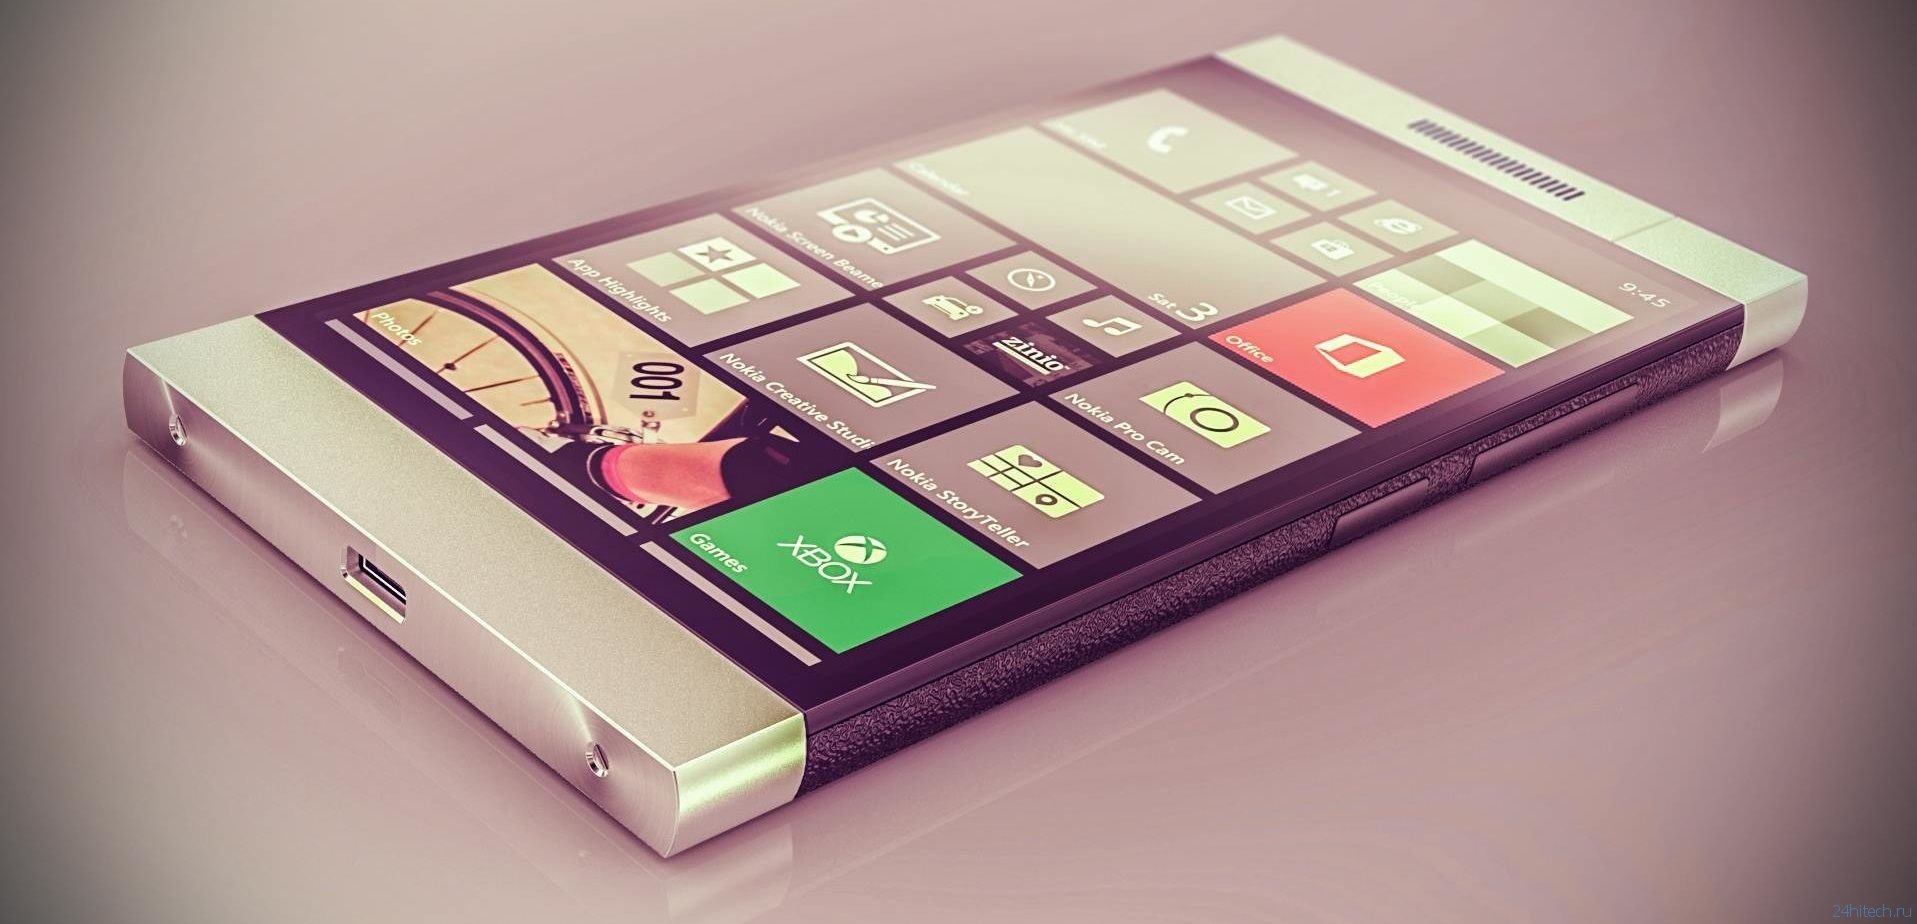 Смартфон RM-1104, который может быть Lumia 940, замечен в Индонезии